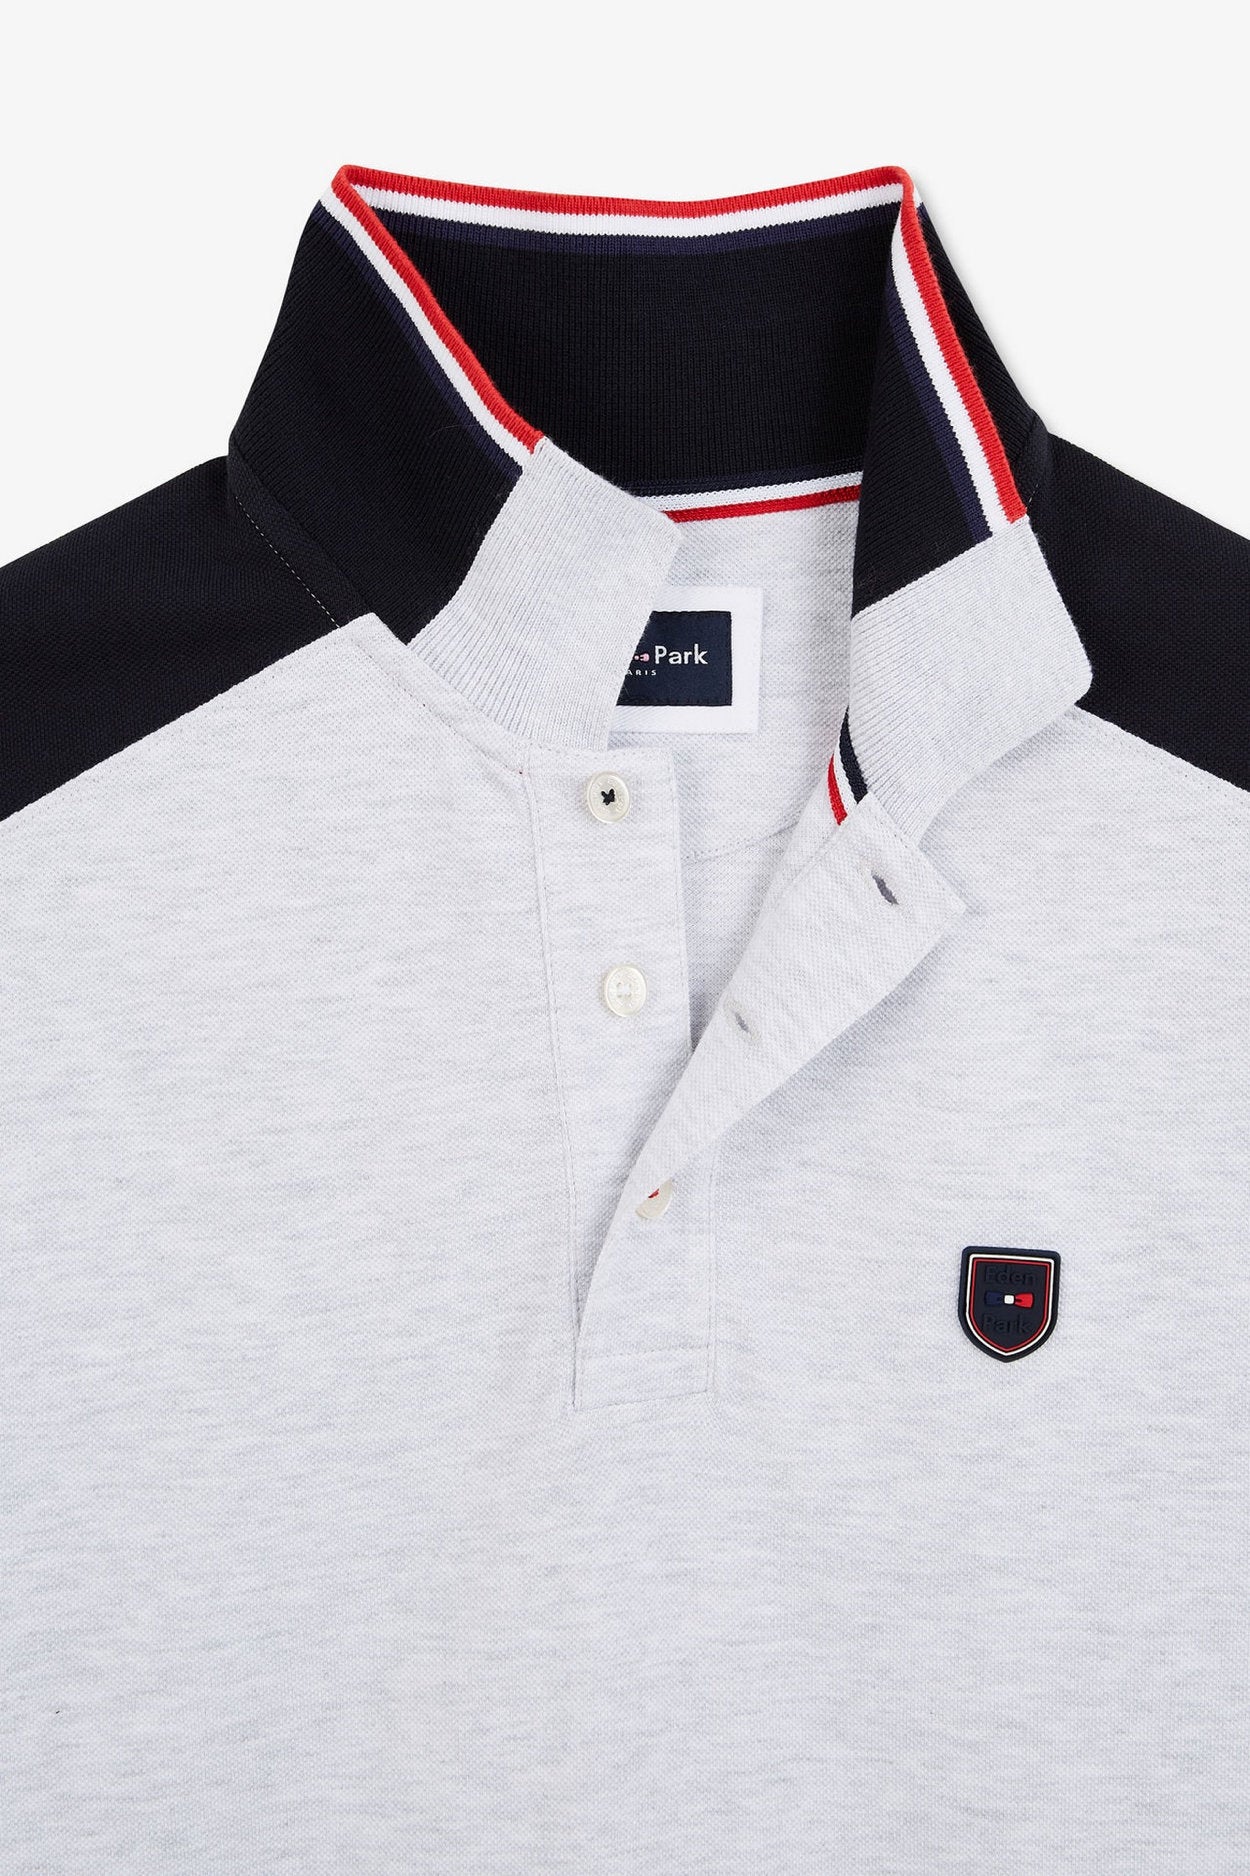 Grey Short-Sleeved Colour-Block Polo Shirt_E24MAIPC0020_GRC7_06